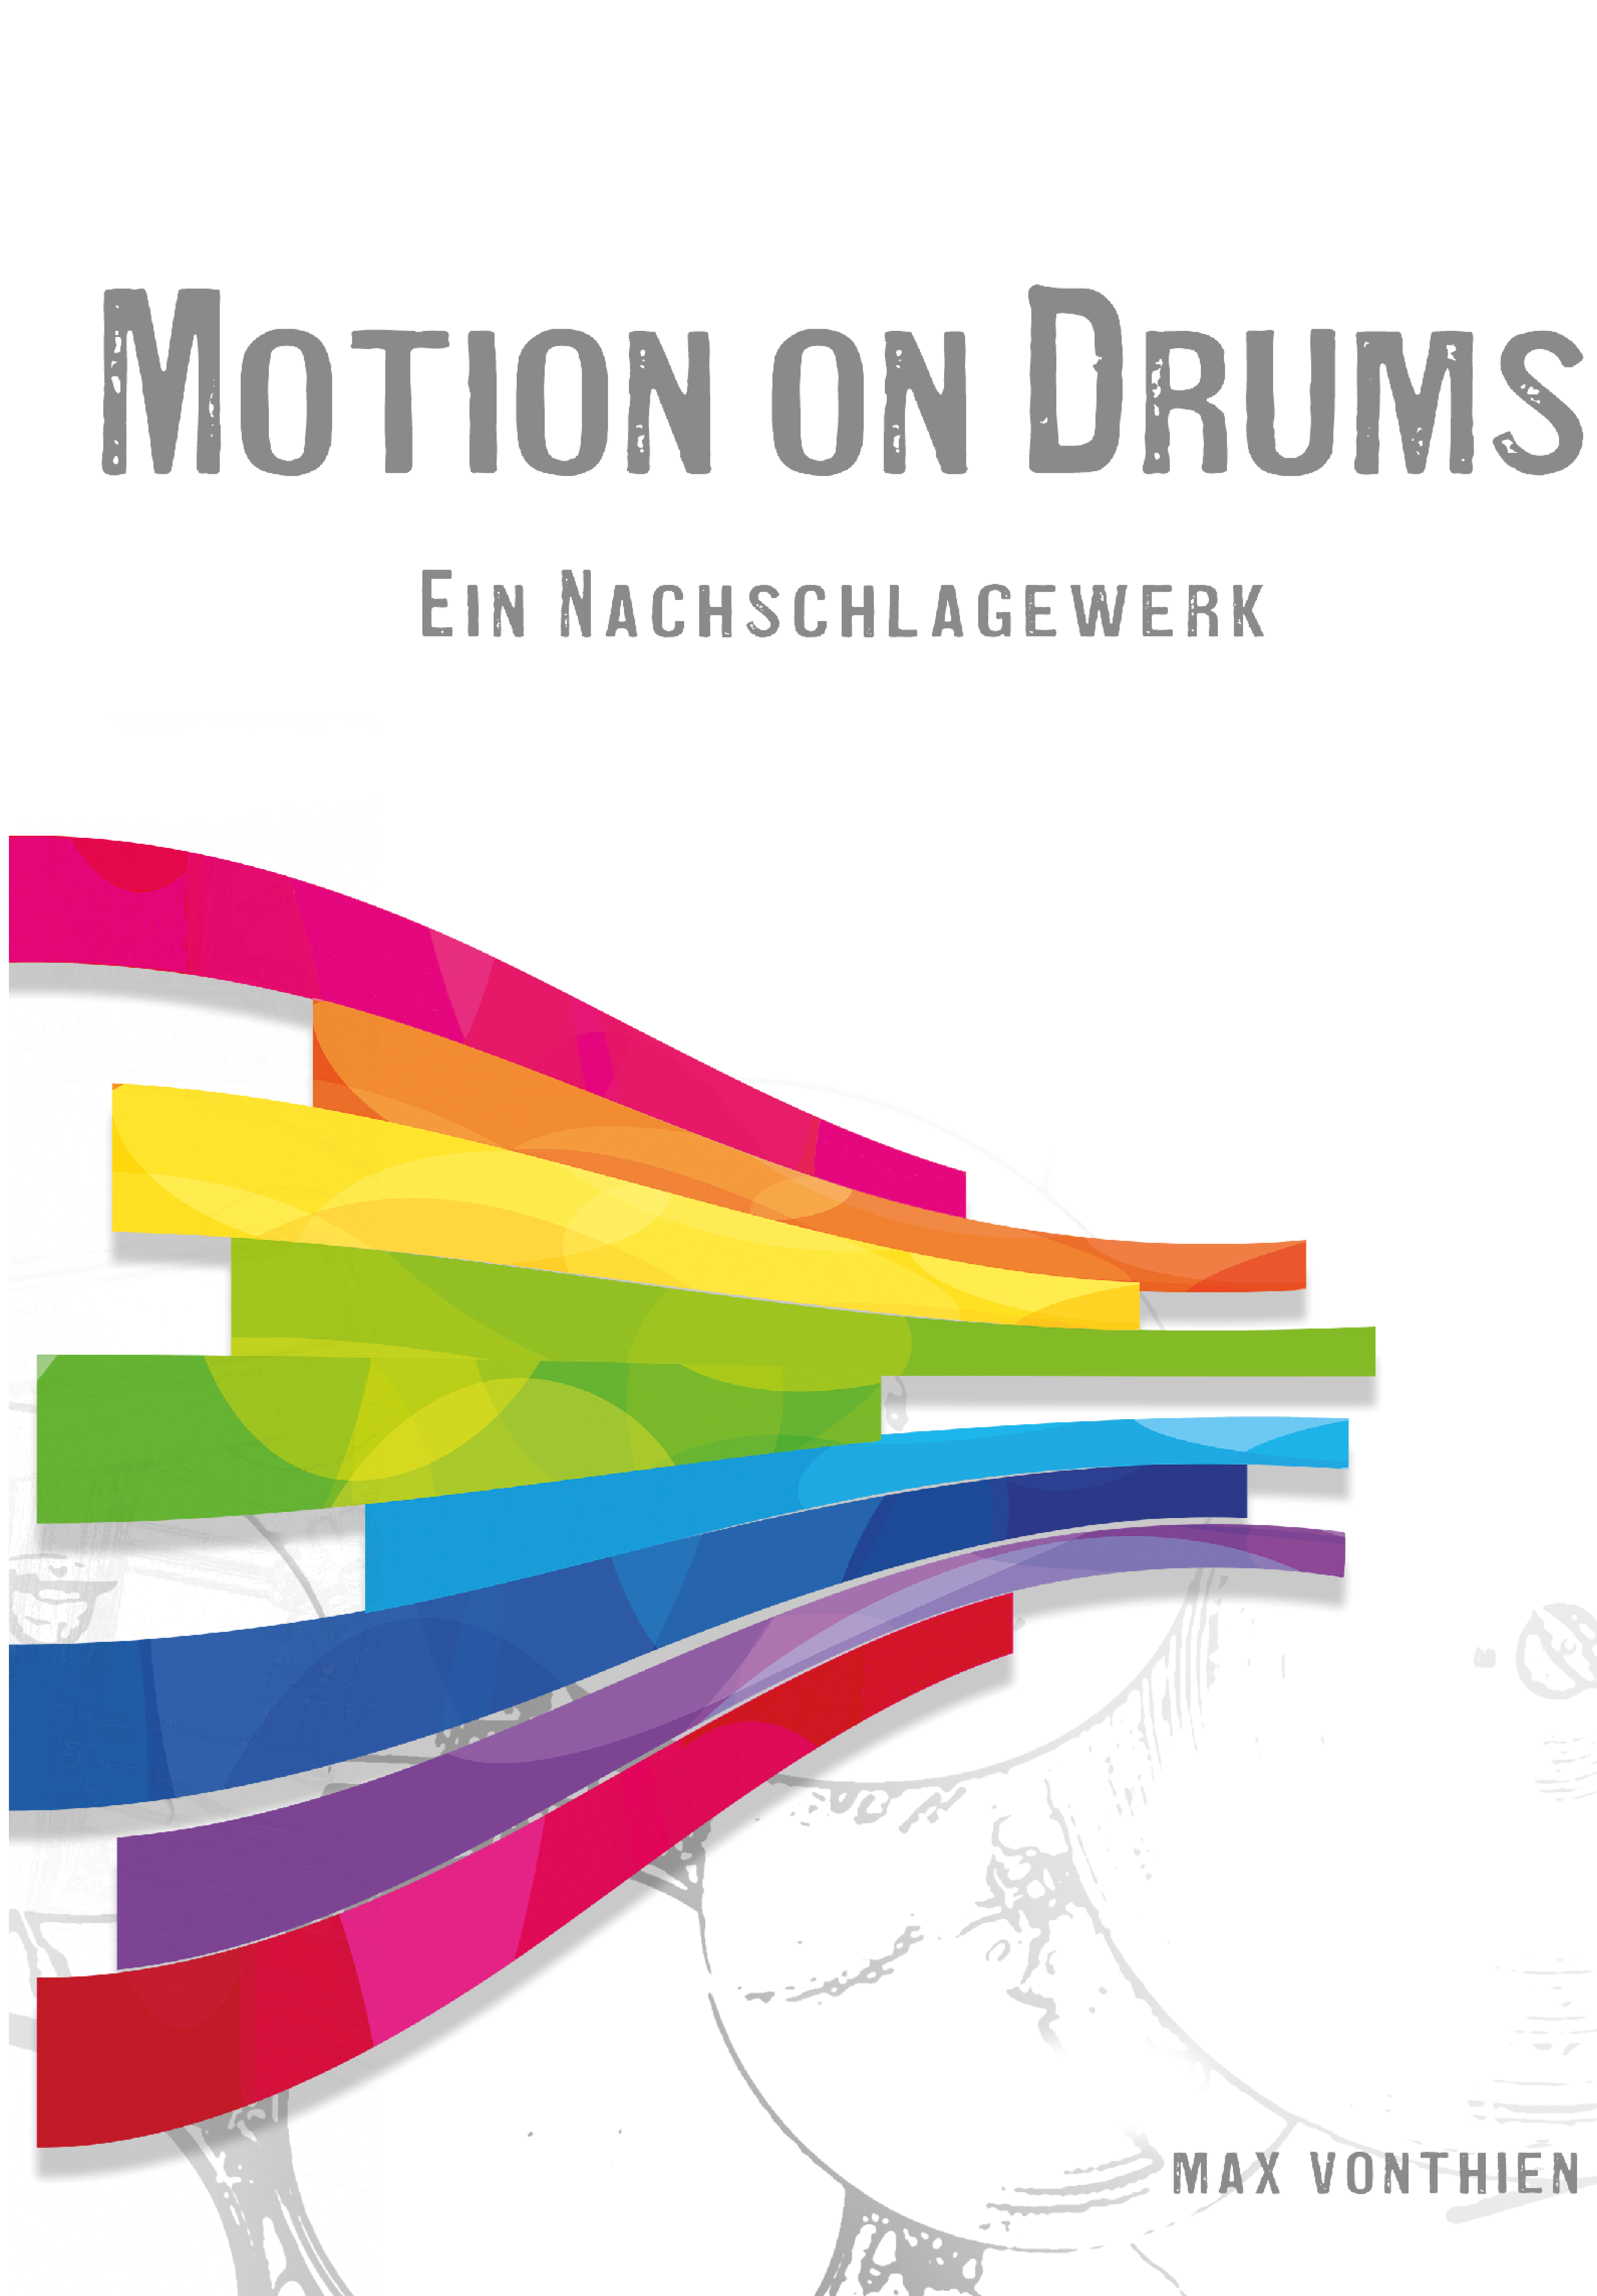 Deckblatt von "Motion on Drums"